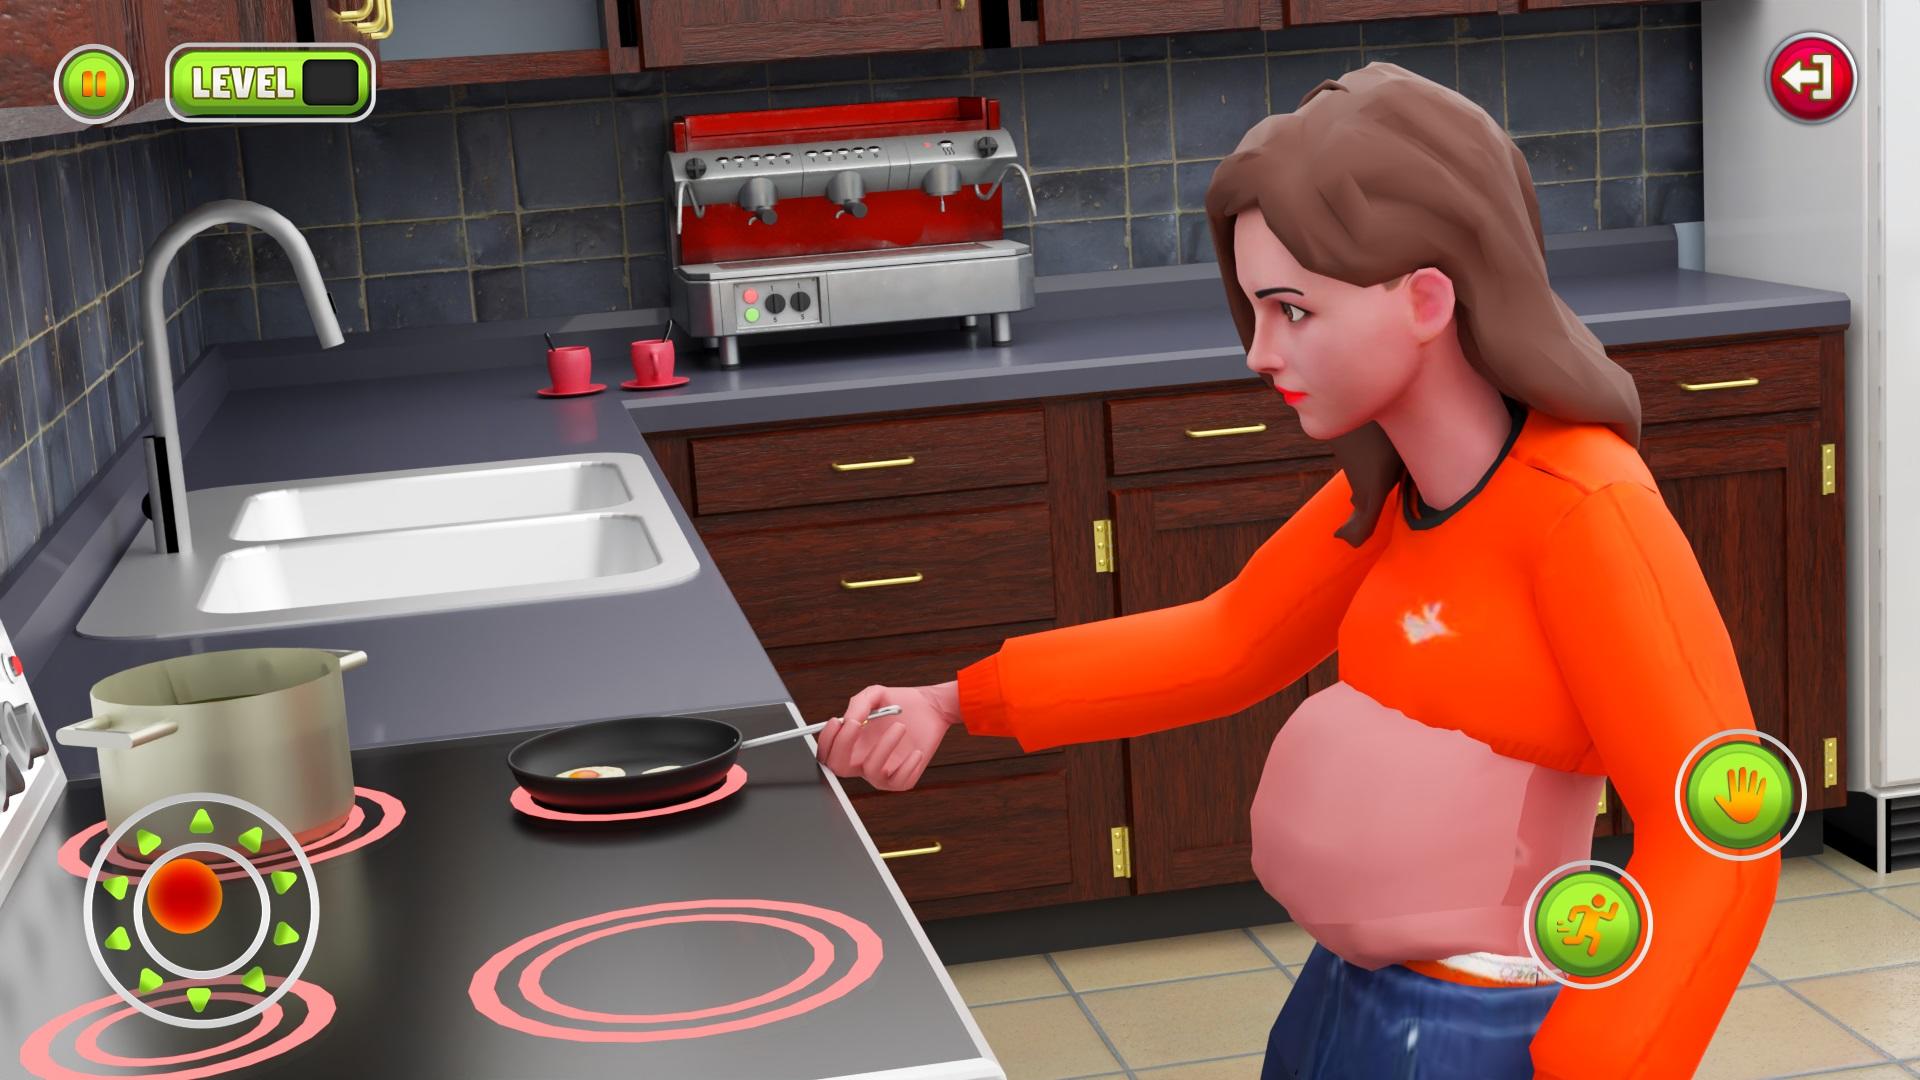 Download do APK de Jogos de médico menina grávida para Android